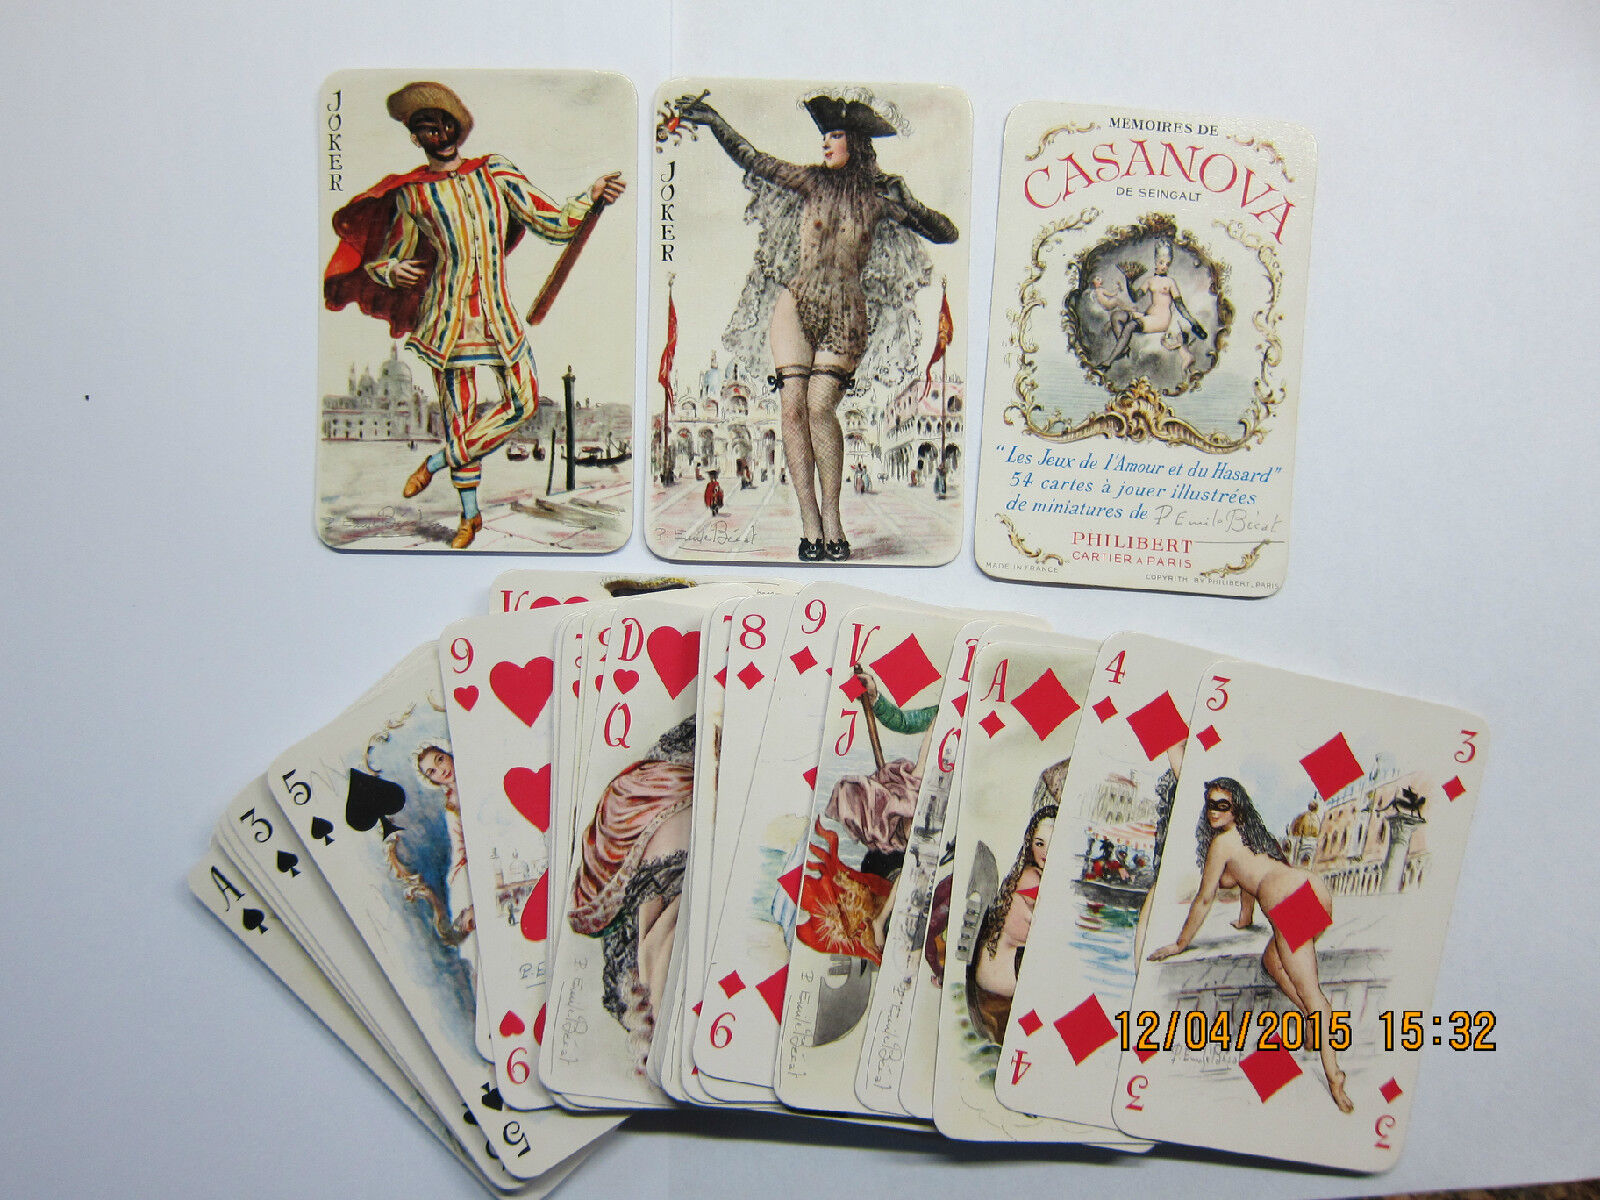 Mémoires de Casanova playing cards by Philibert. 